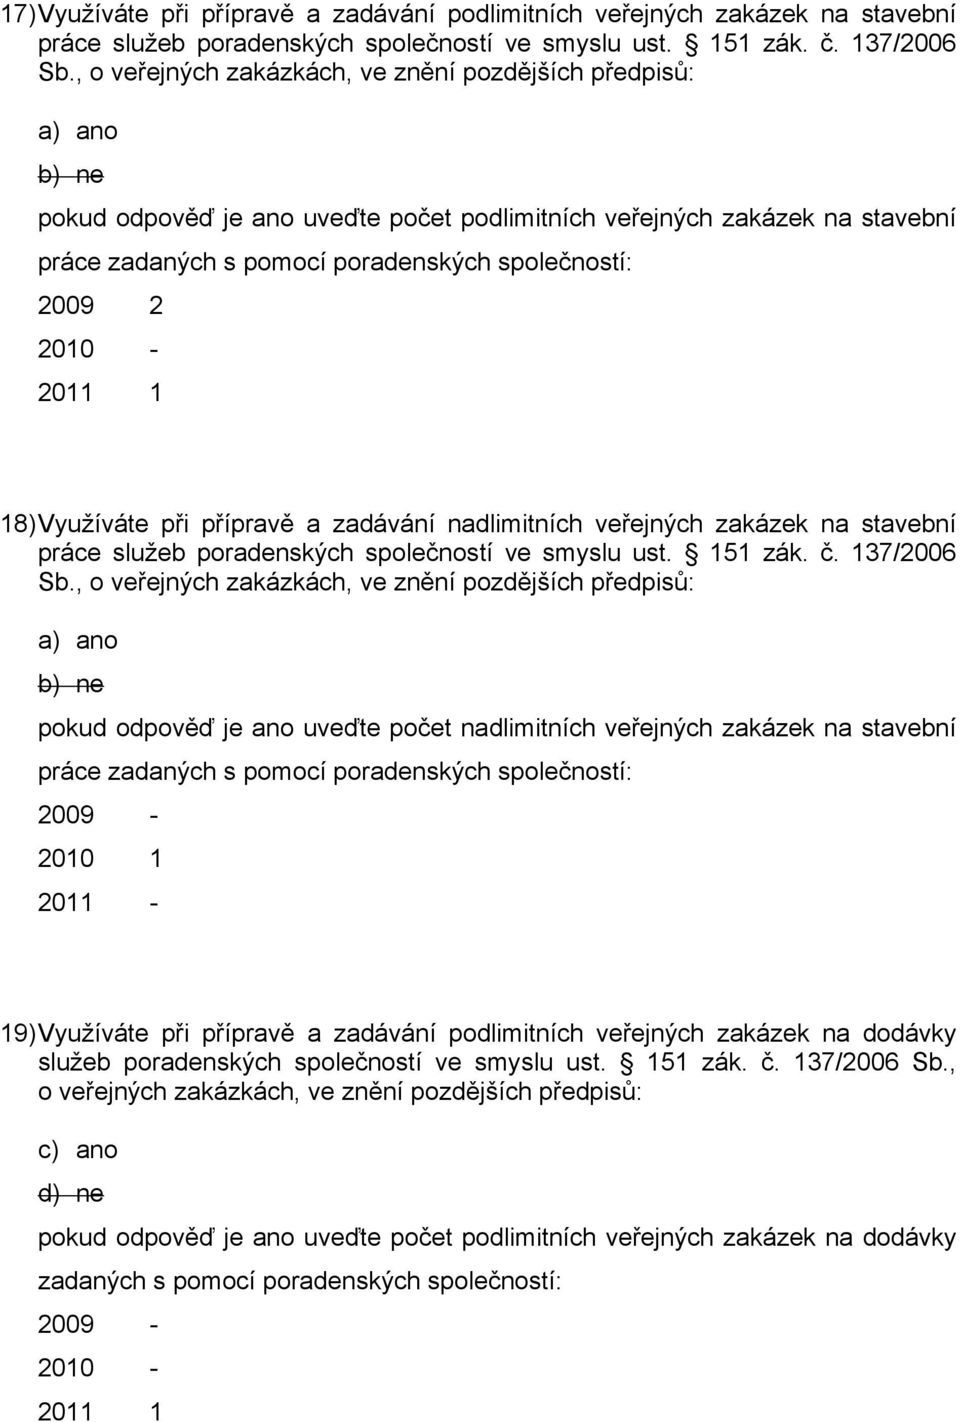 veřejných zakázek na stavební práce služeb poradenských společností ve smyslu ust. 151 zák. č. 137/2006 Sb.